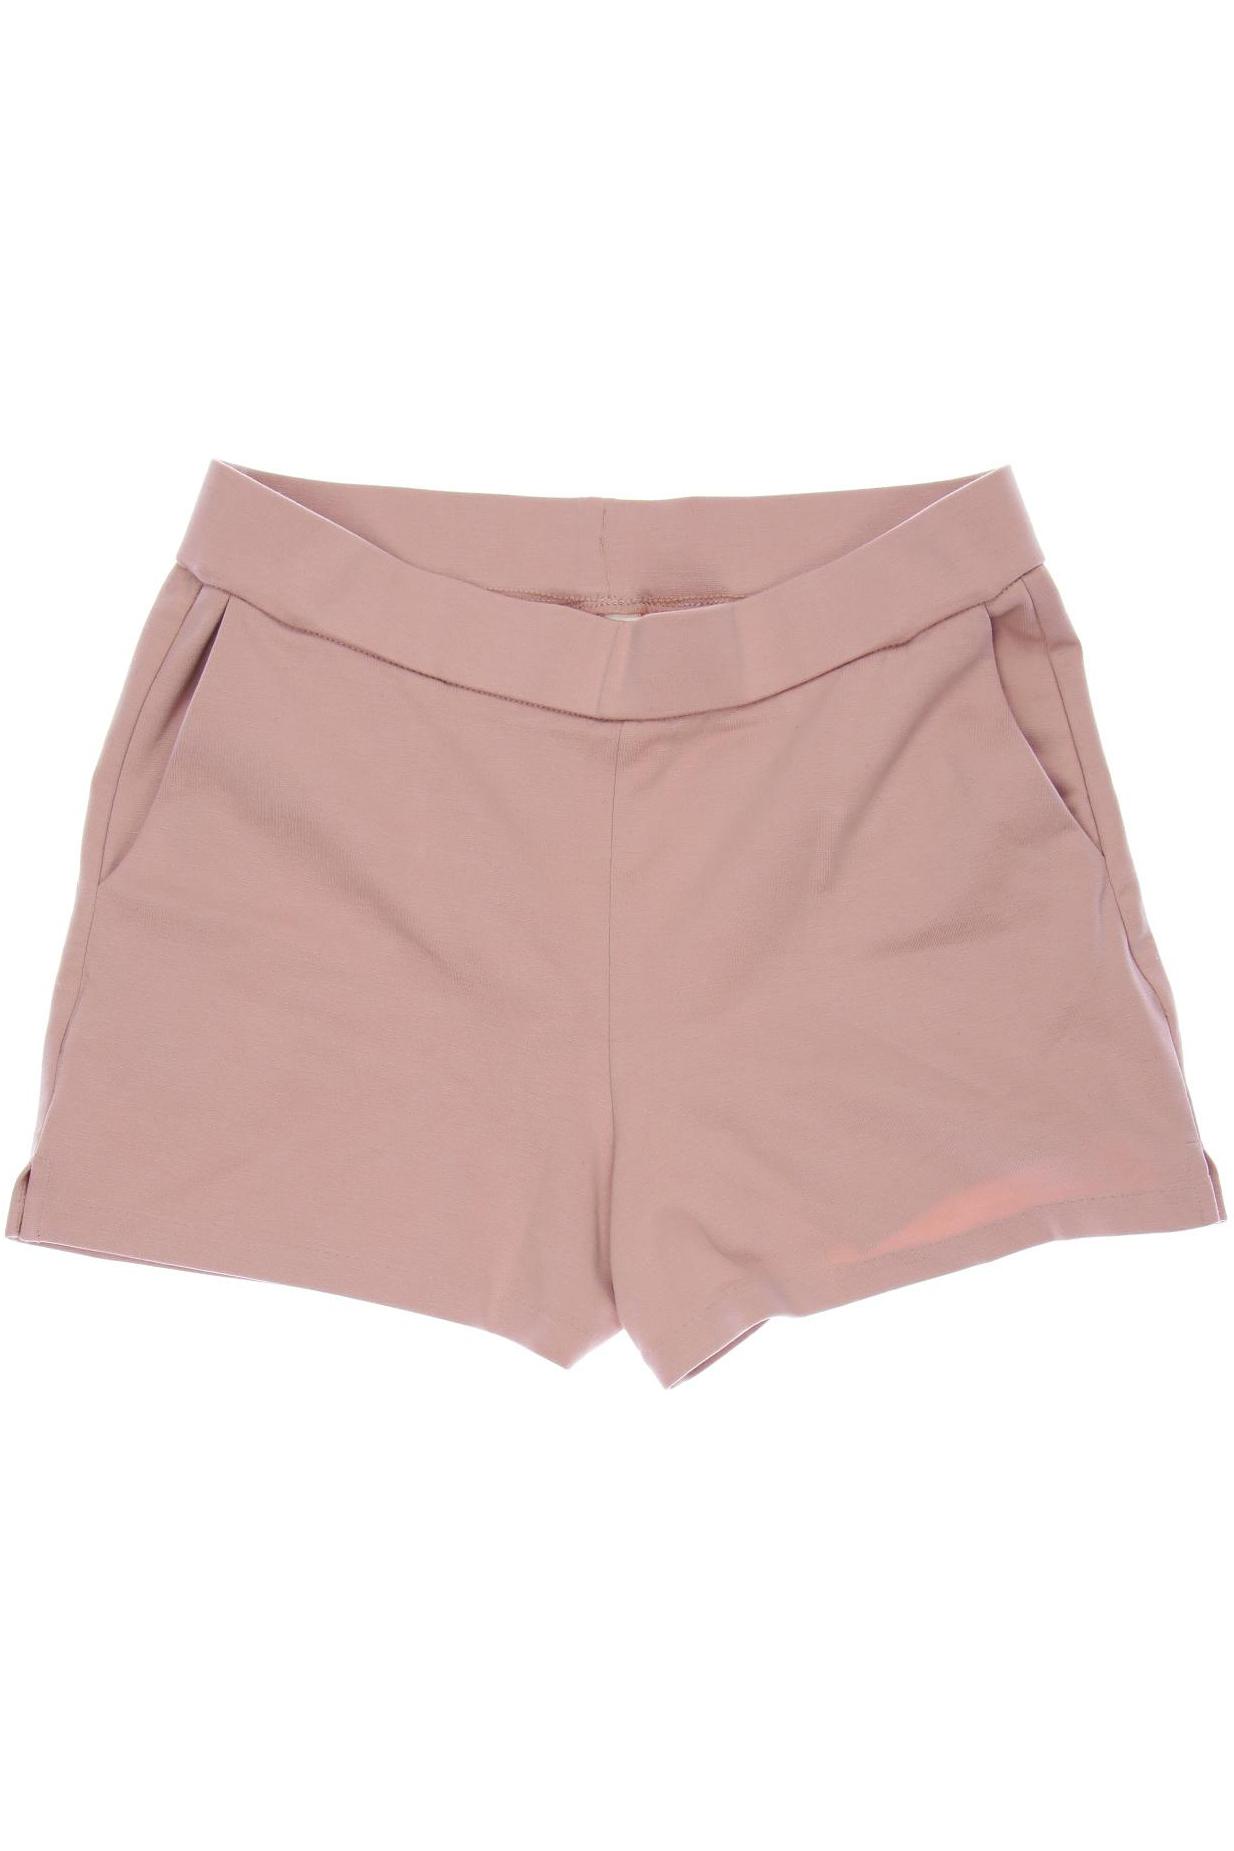 H&M Damen Shorts, pink von H&M